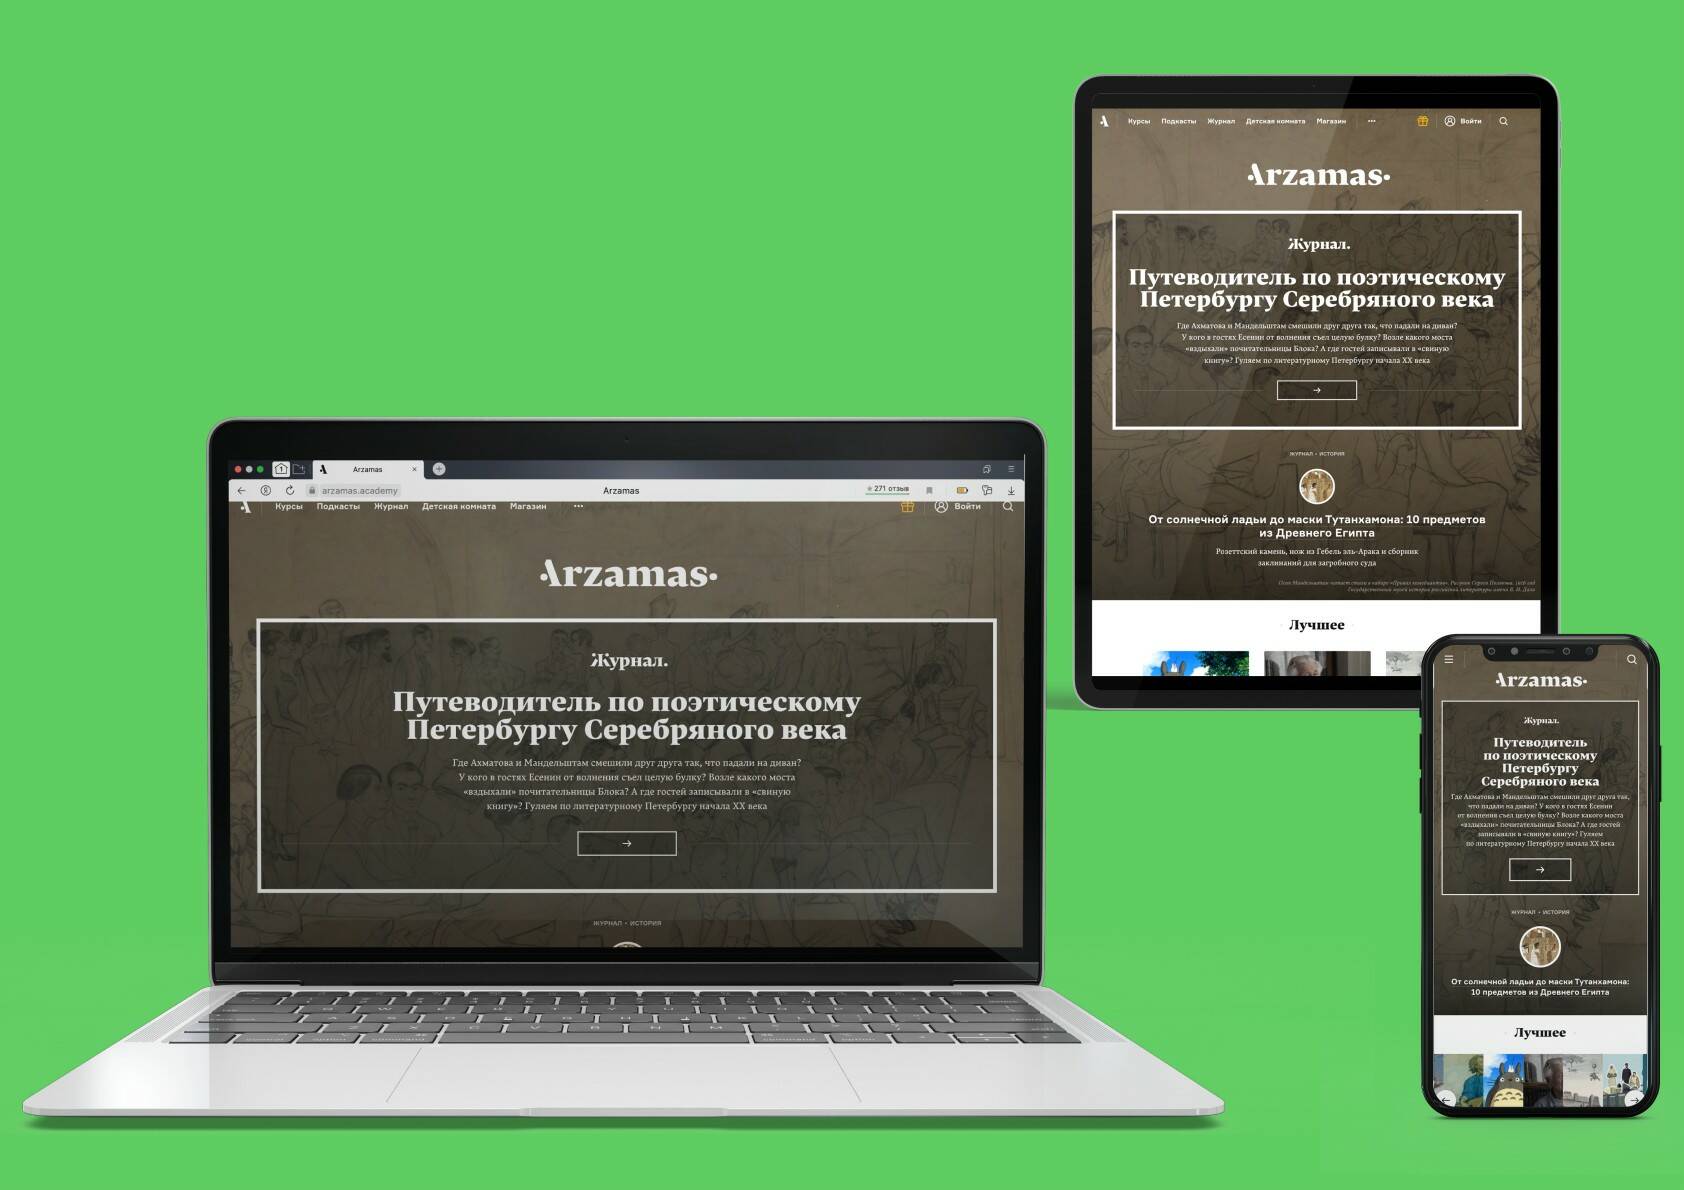 Адаптивный сайт портала «Арзамас» — есть версия для компьютера, планшета и телефона